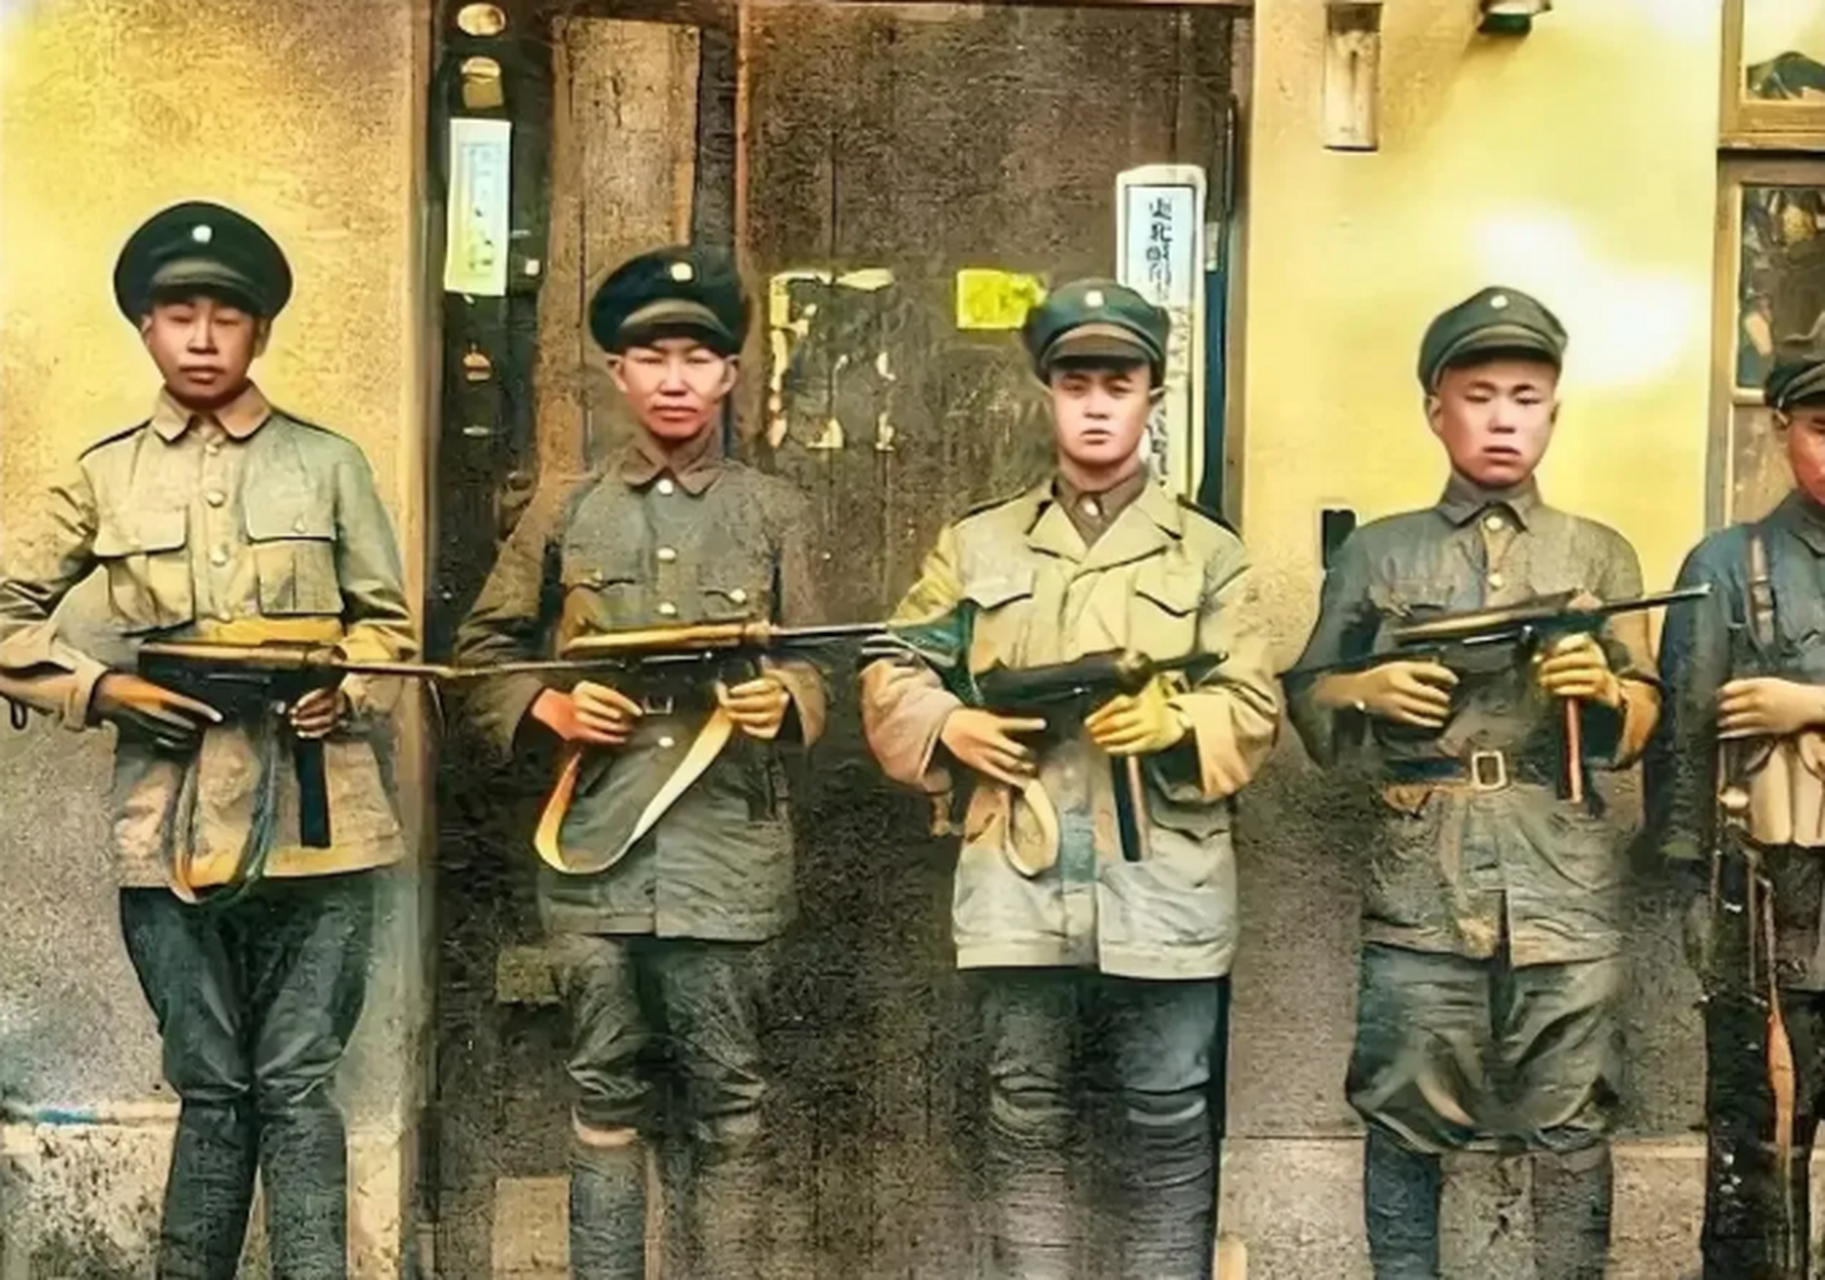 几名国军战士的合影照,画面中的他们依靠墙面,并排而站,一身美式装备